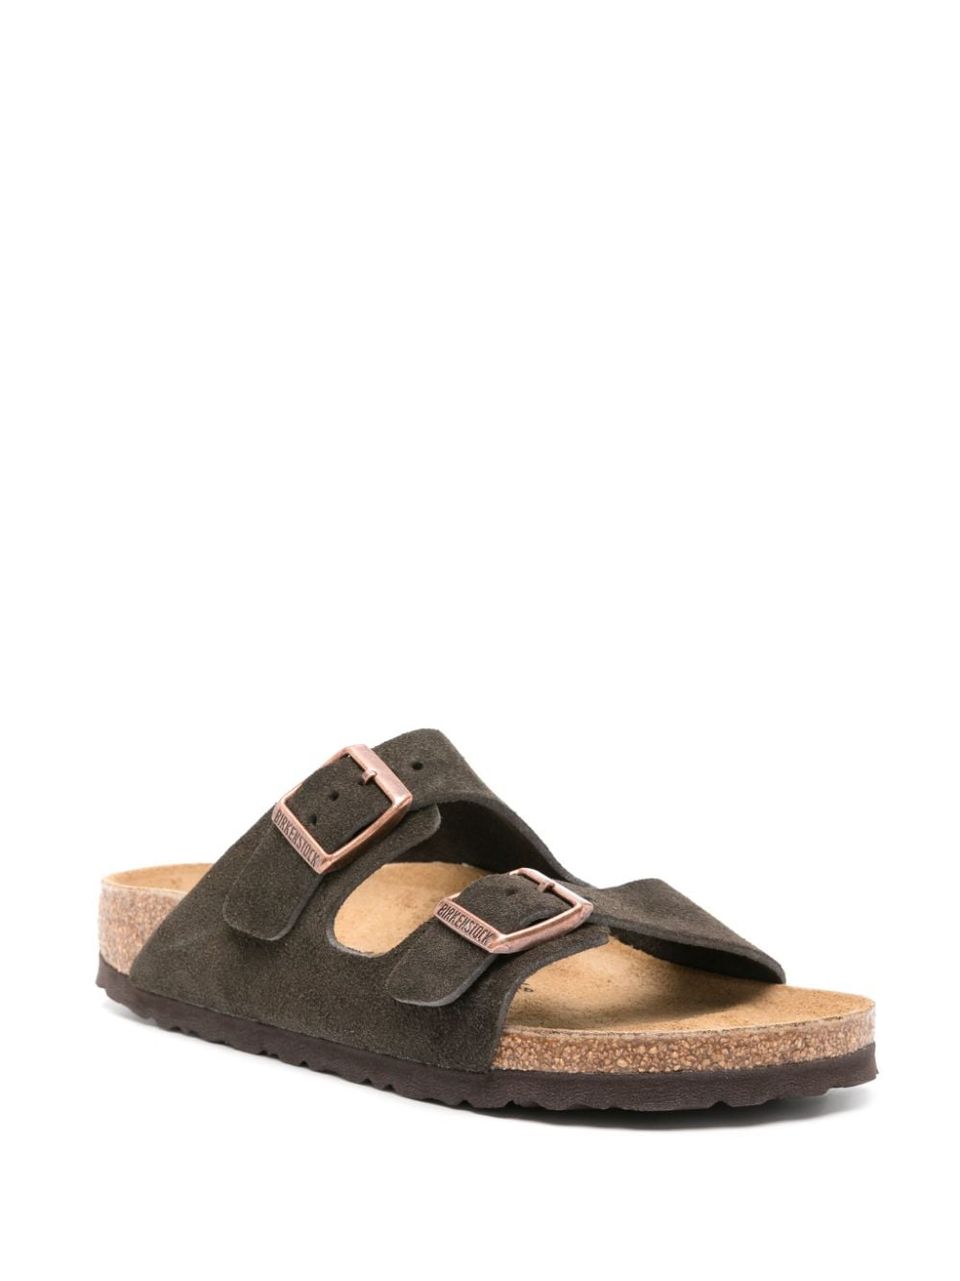 'Arizona' sandals